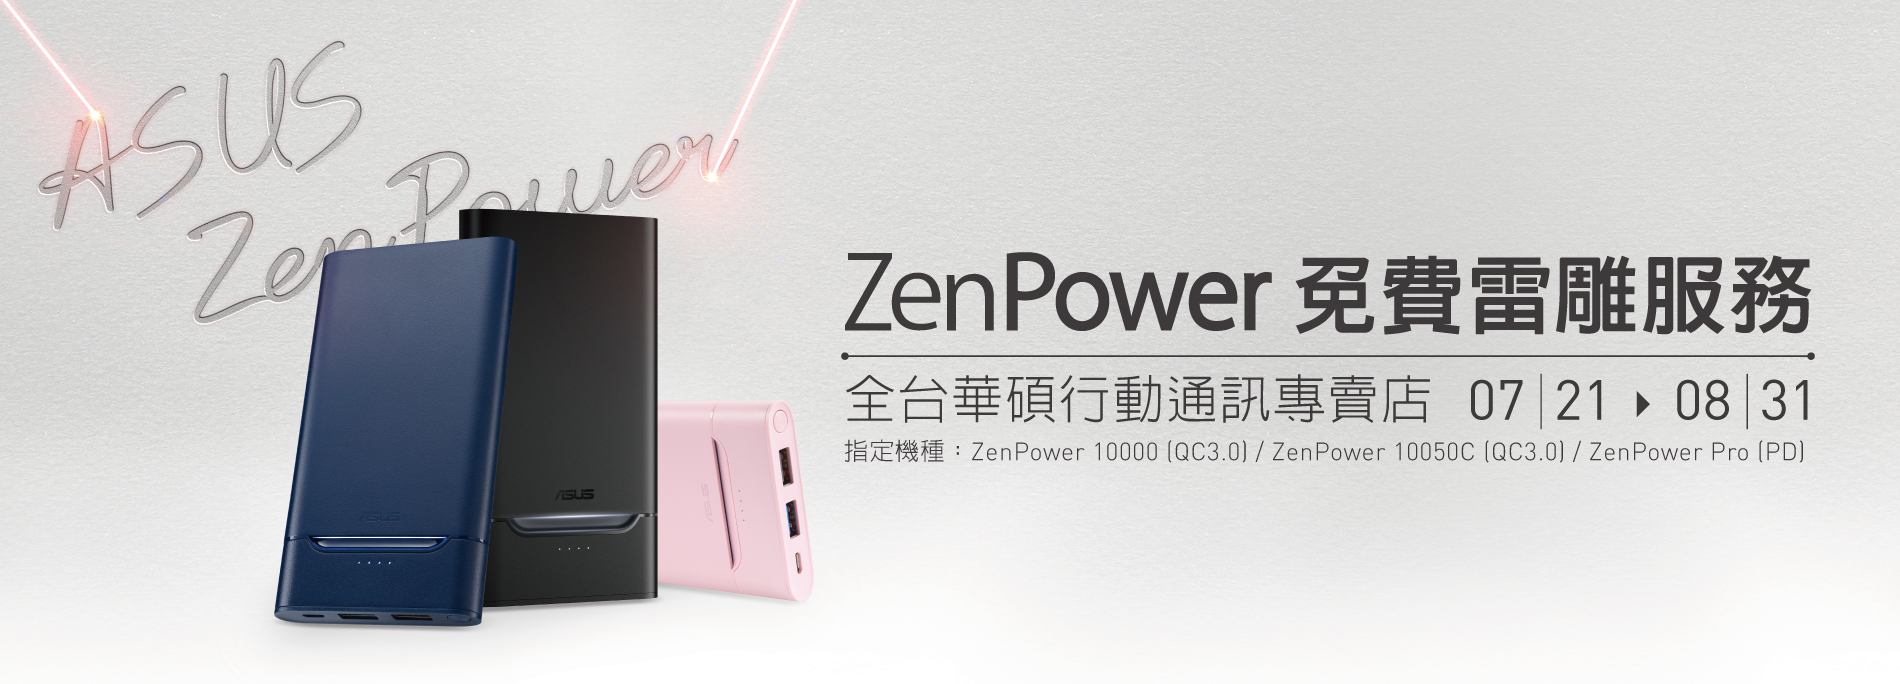 【免費雷雕】ZenPower 專屬客製化服務